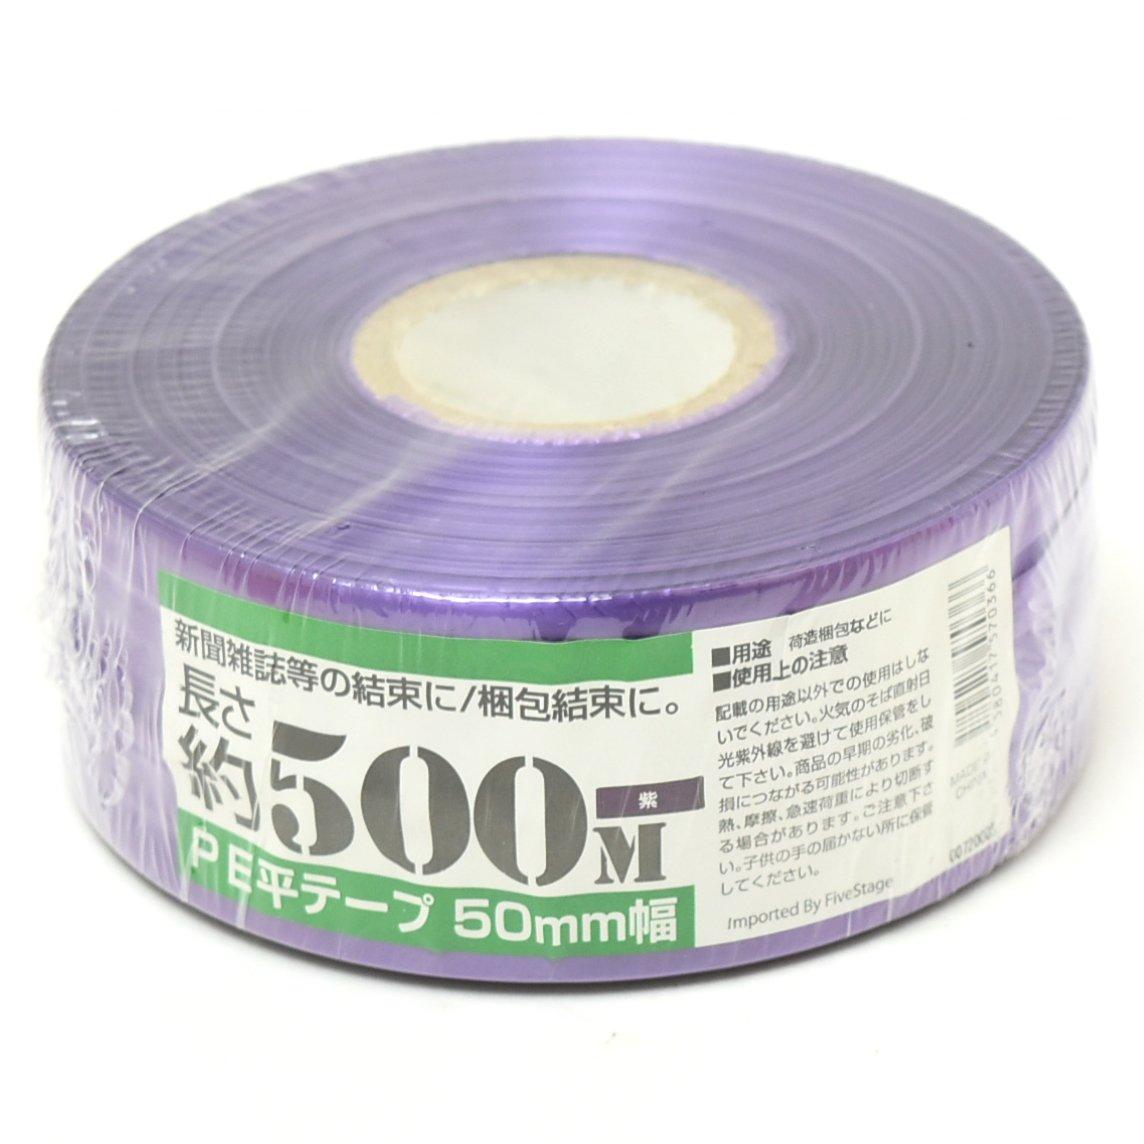 紺屋商事 PEレコード巻テープ50X500M紫(No.00720005)